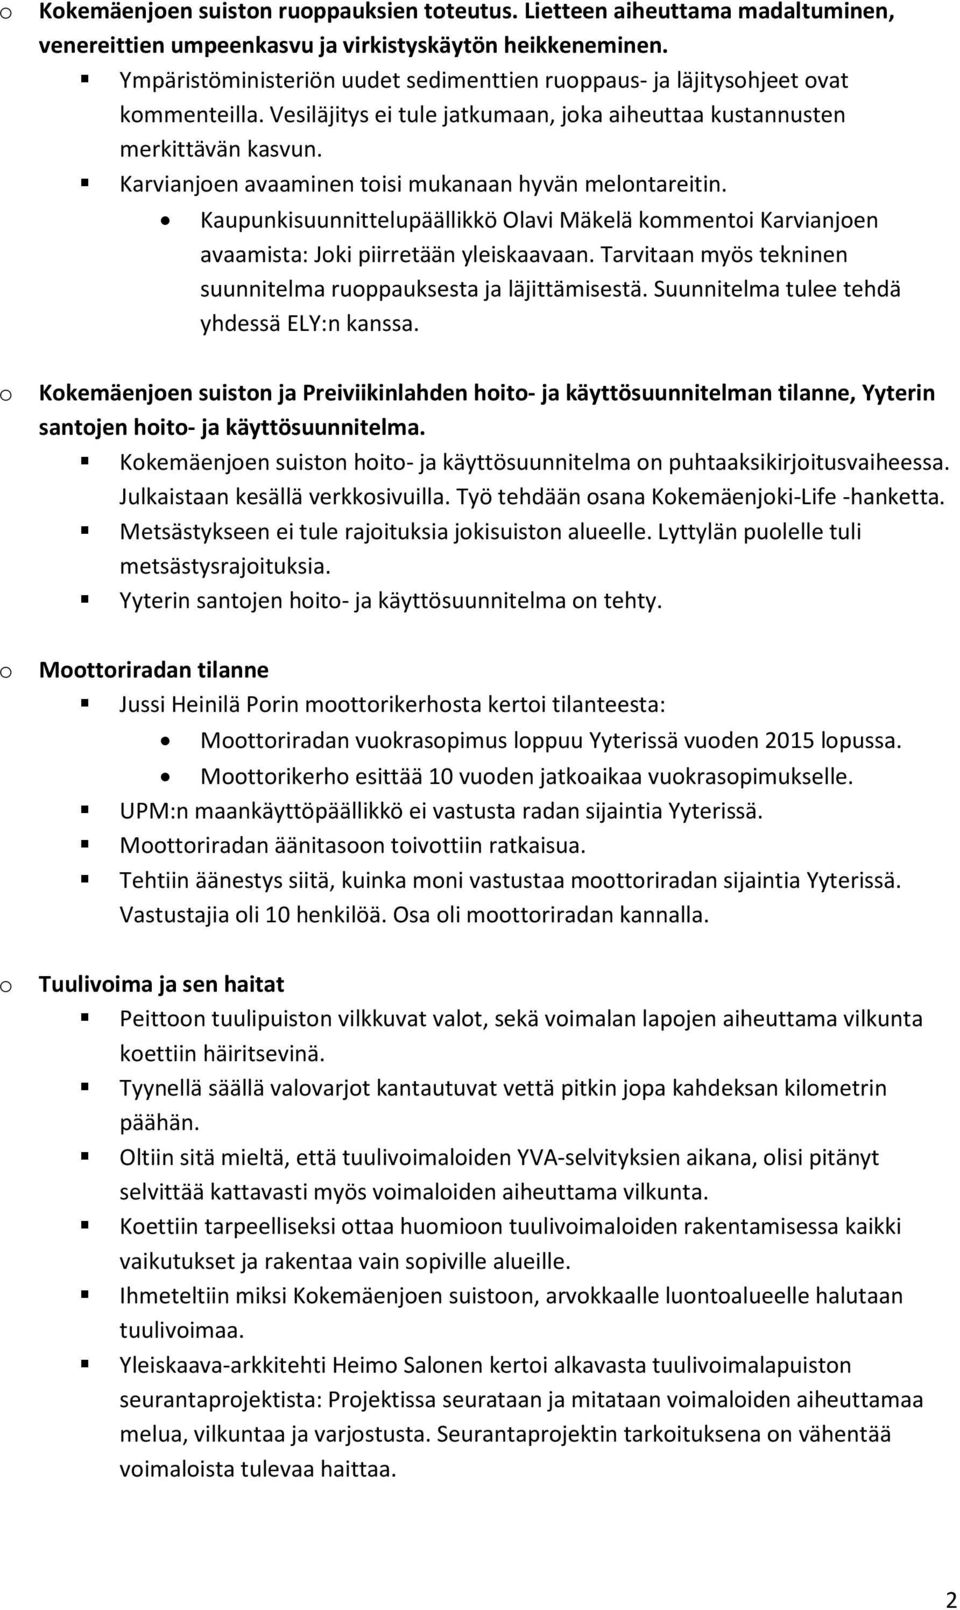 Karvianjen avaaminen tisi mukanaan hyvän melntareitin. Kaupunkisuunnittelupäällikkö Olavi Mäkelä kmmenti Karvianjen avaamista: Jki piirretään yleiskaavaan.